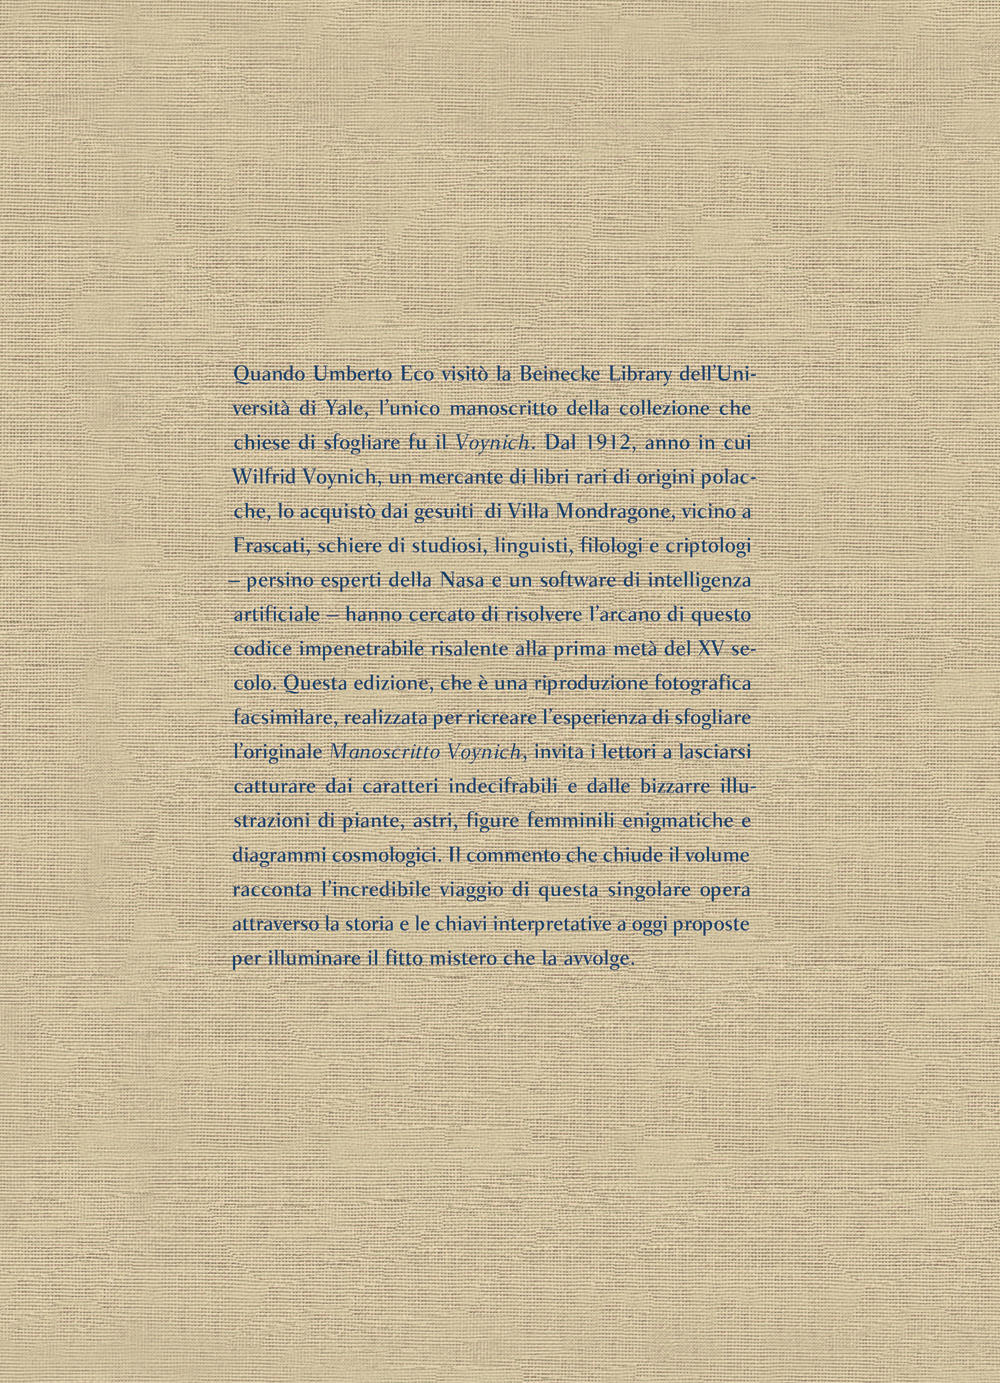 Il manoscritto Voynich. Il codice più misterioso ed esoterico al mondo